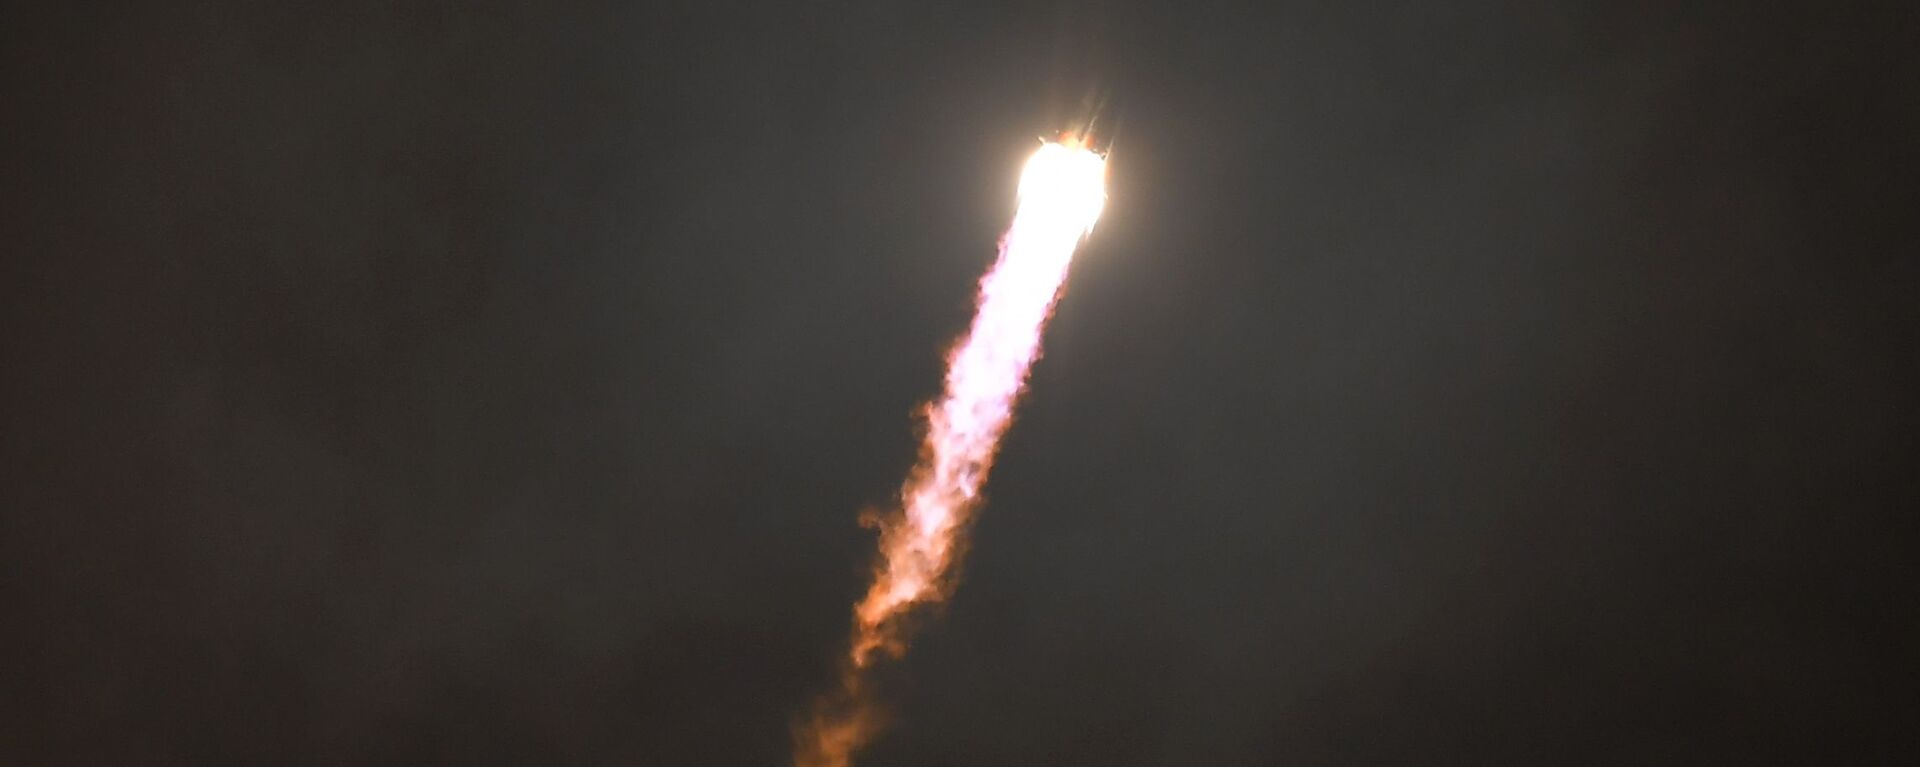 Запуск ракеты Союз-СТ c космодрома Куру - Sputnik Армения, 1920, 01.02.2021